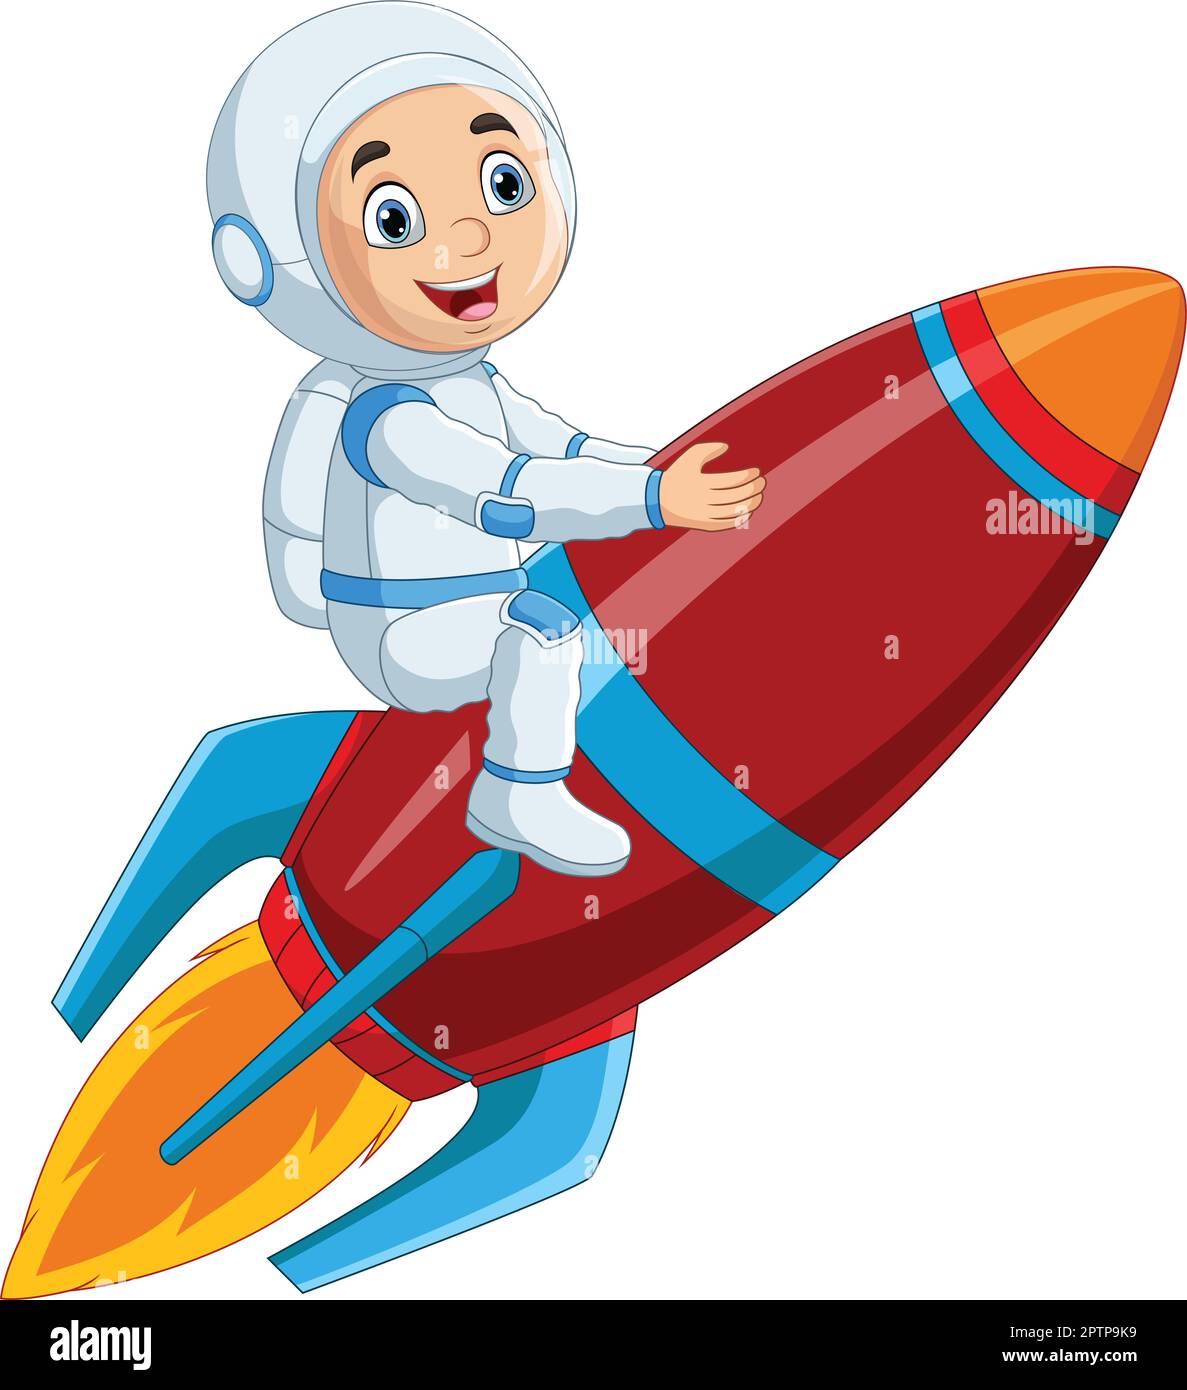 Cartoon boy astronaut riding a rocket Stock Vector